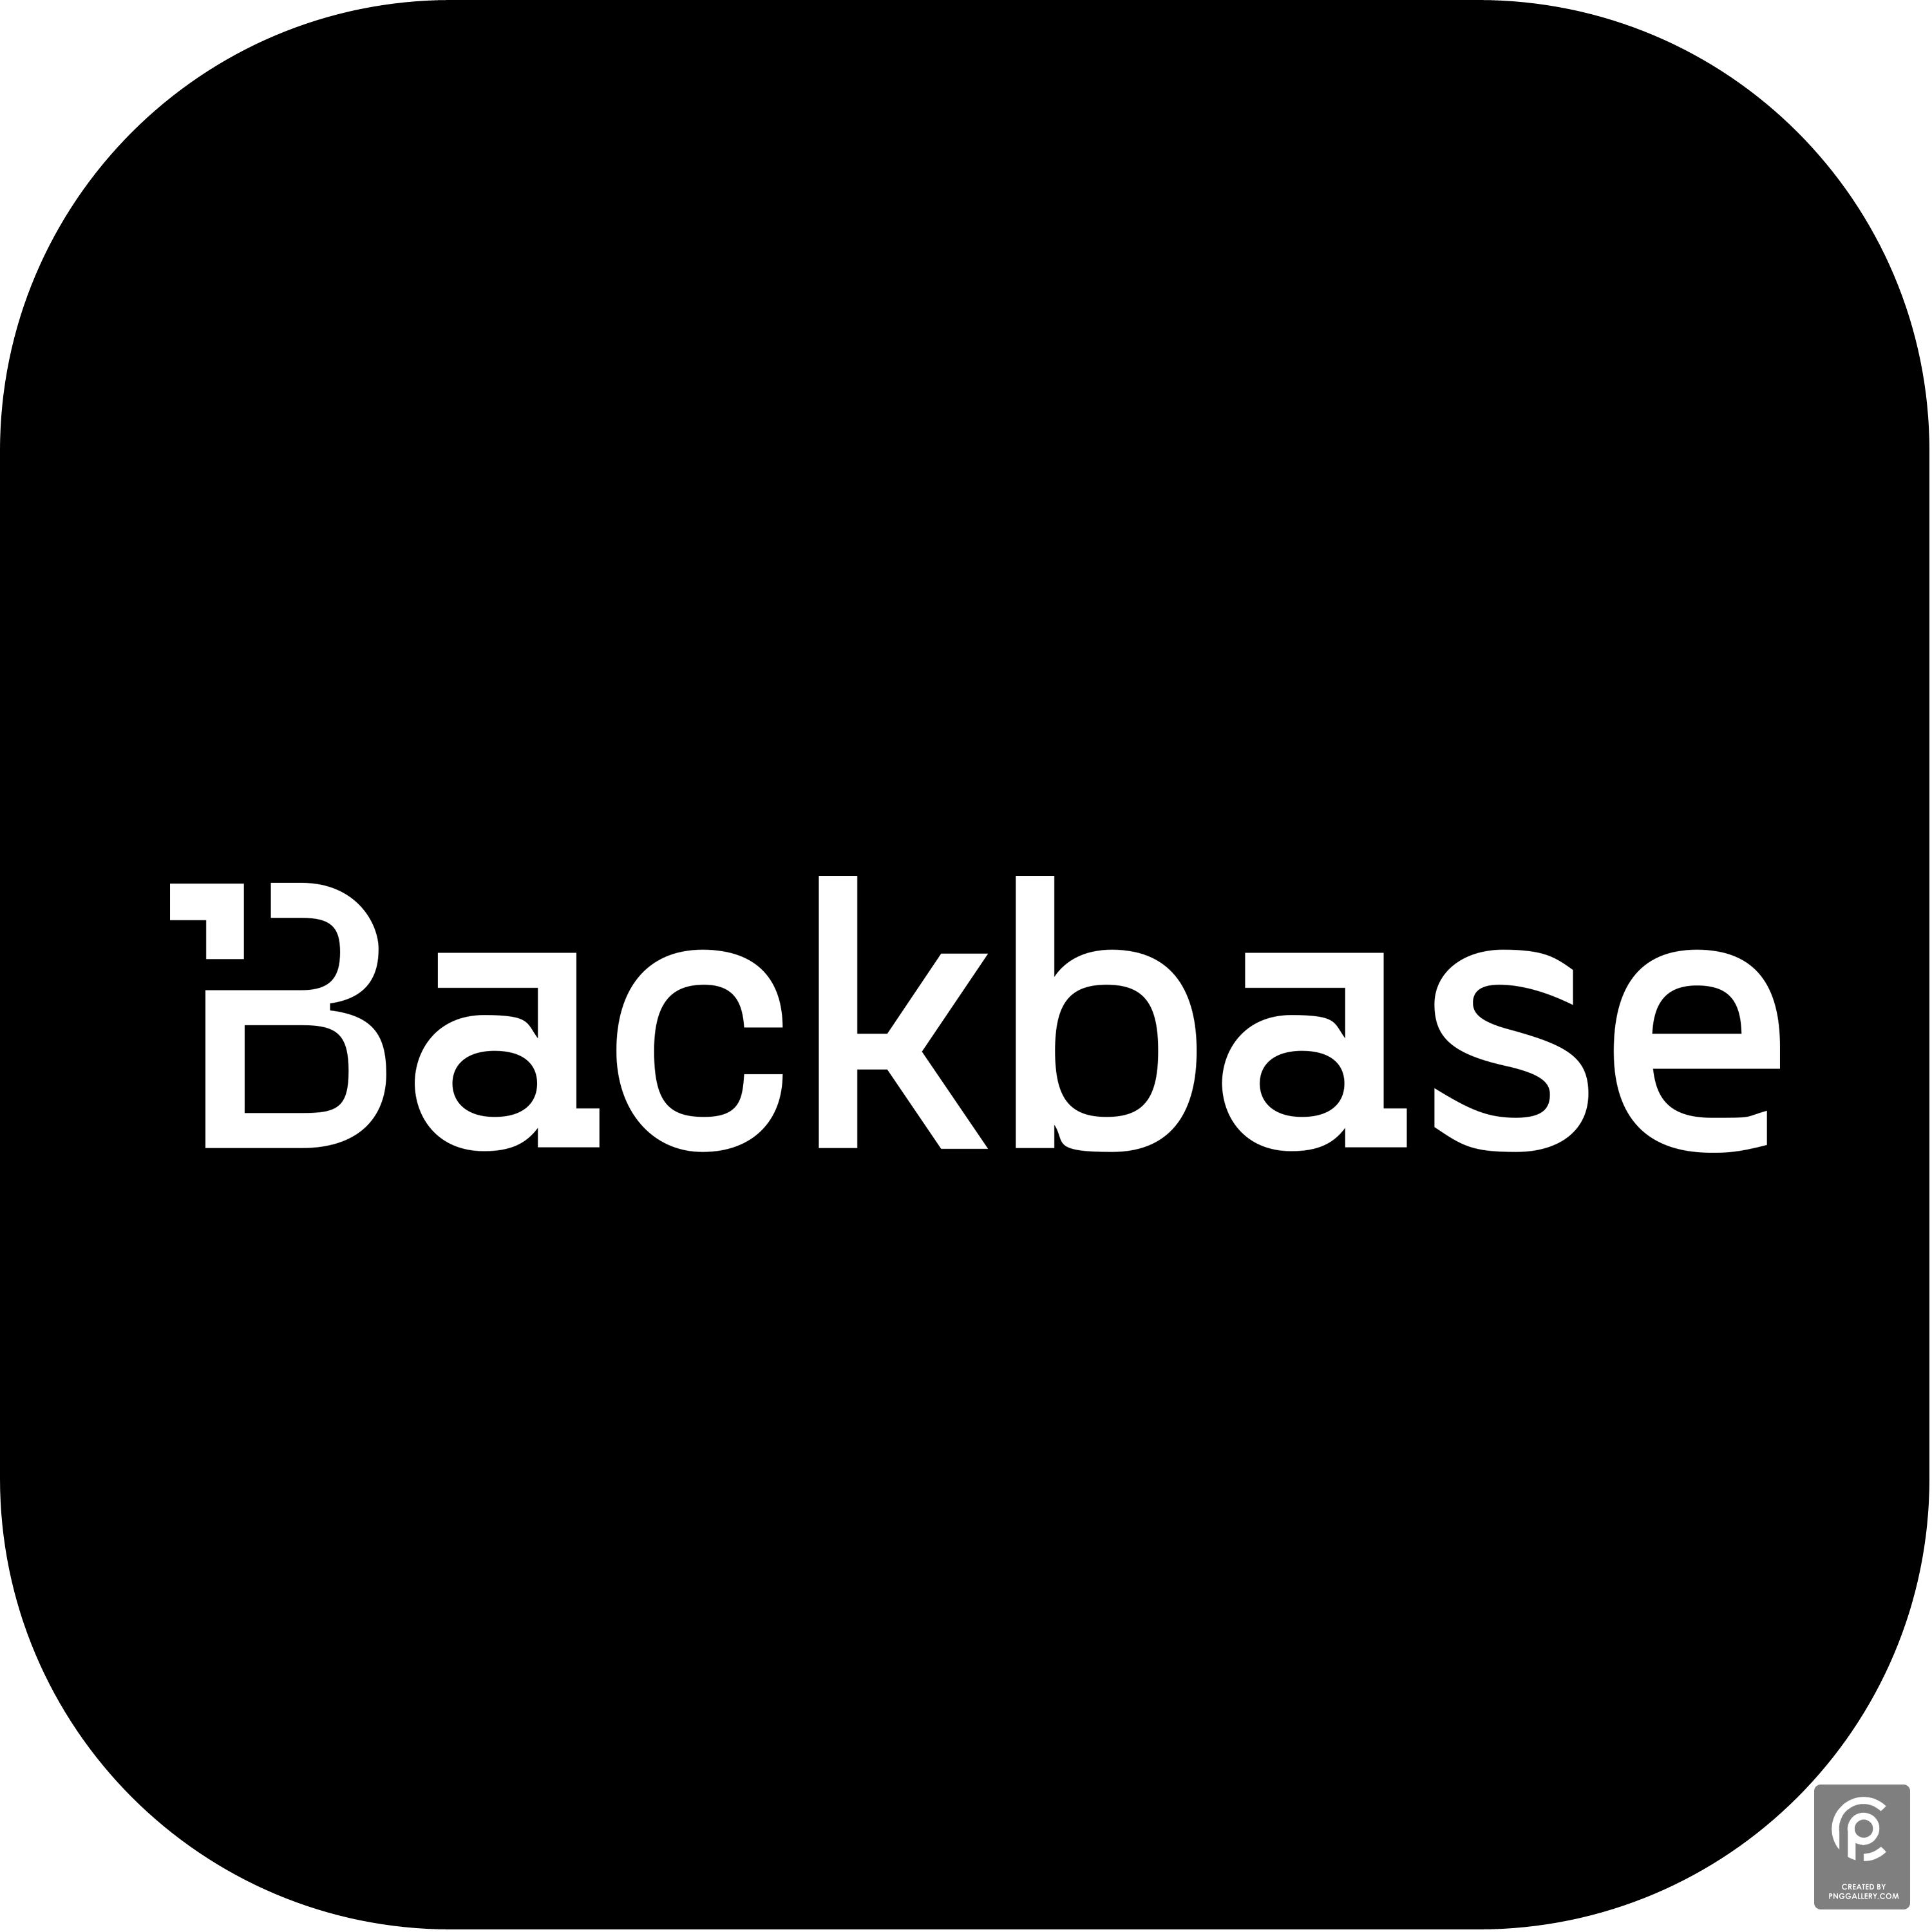 Backbase Logo Transparent Photo